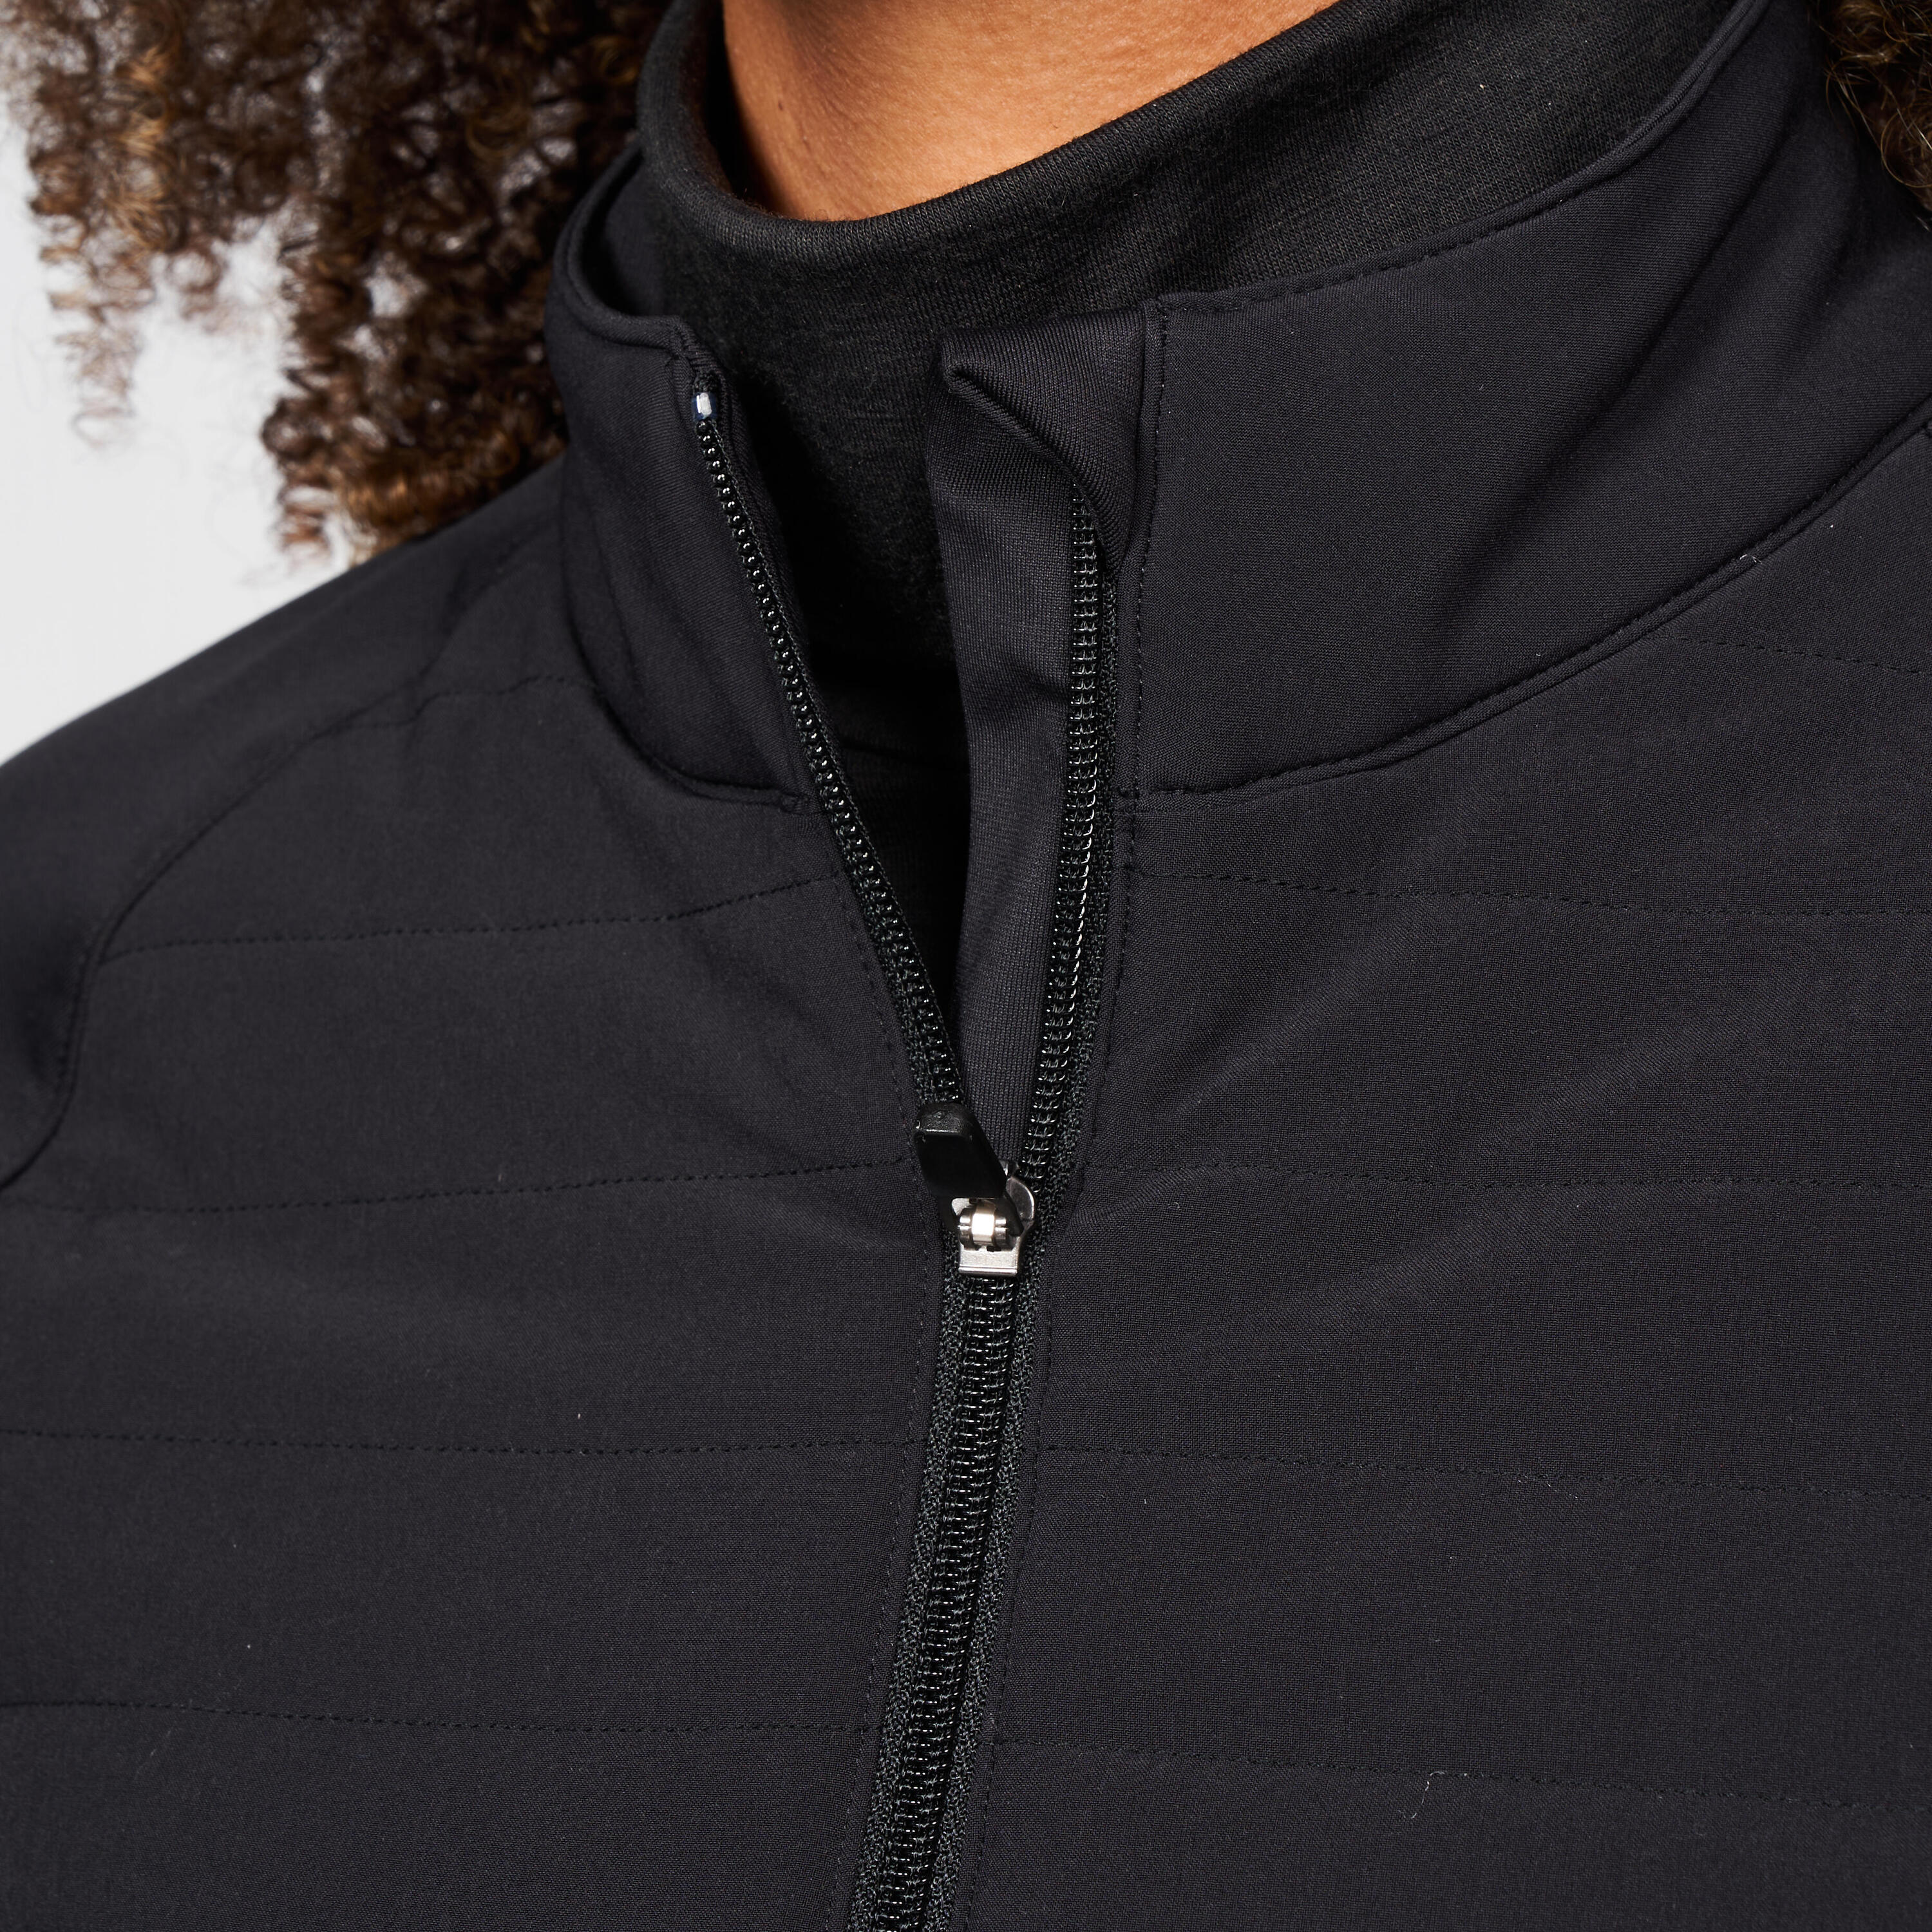 Women's golf winter jacket - CW500 black 3/6